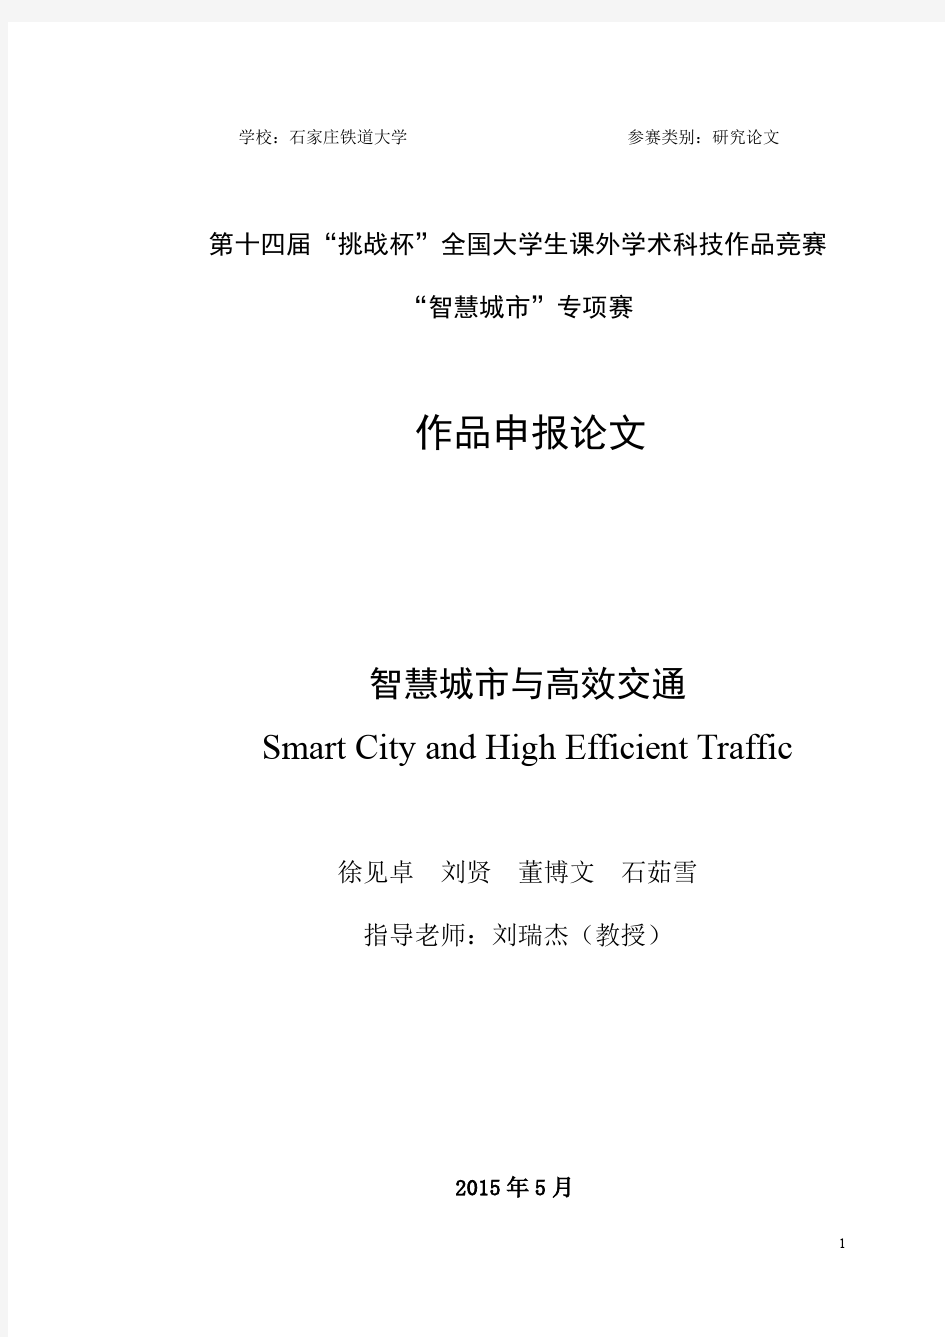 《智慧城市和高效交通》论文